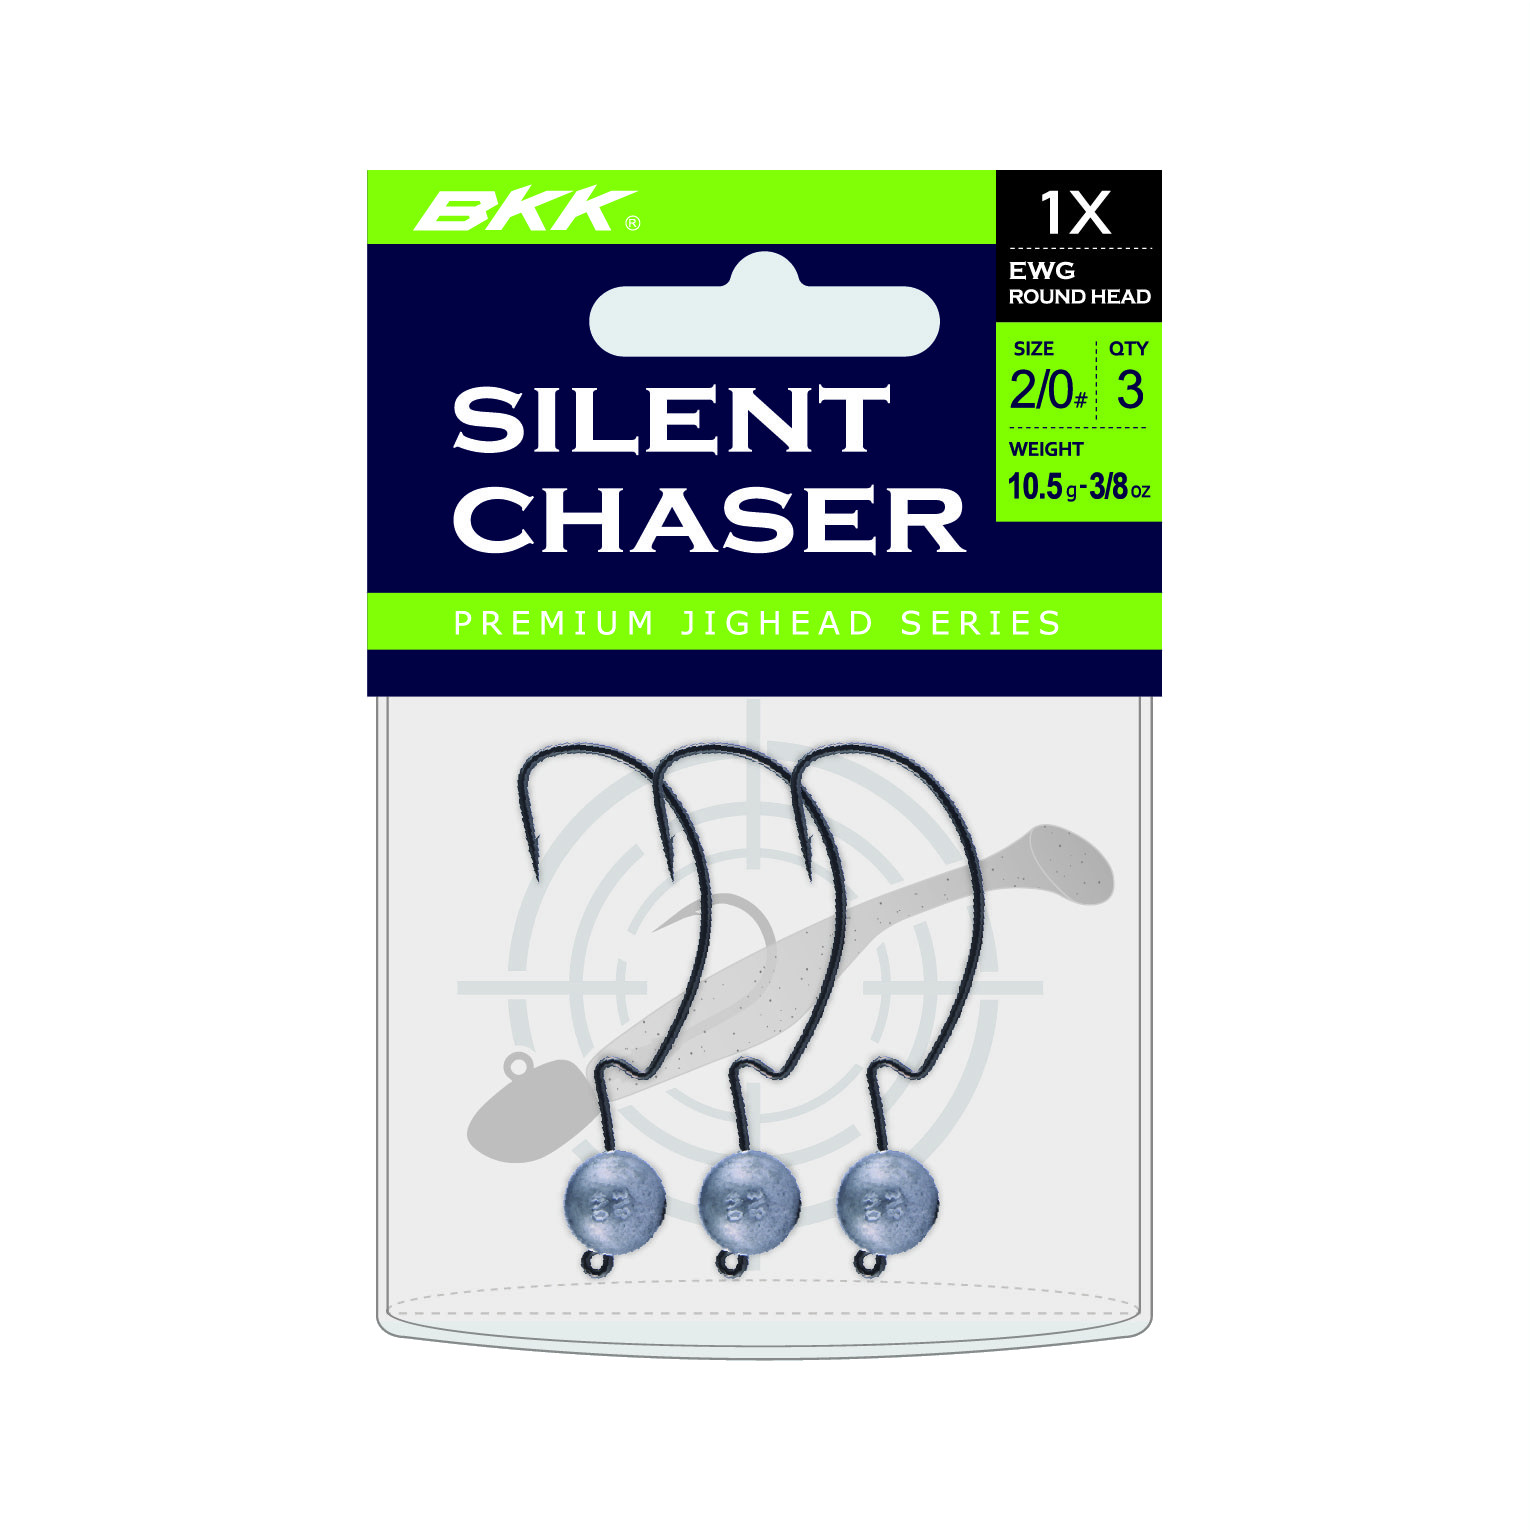 BKK Silent Chaser 1X EWG Round Head Jighead #1